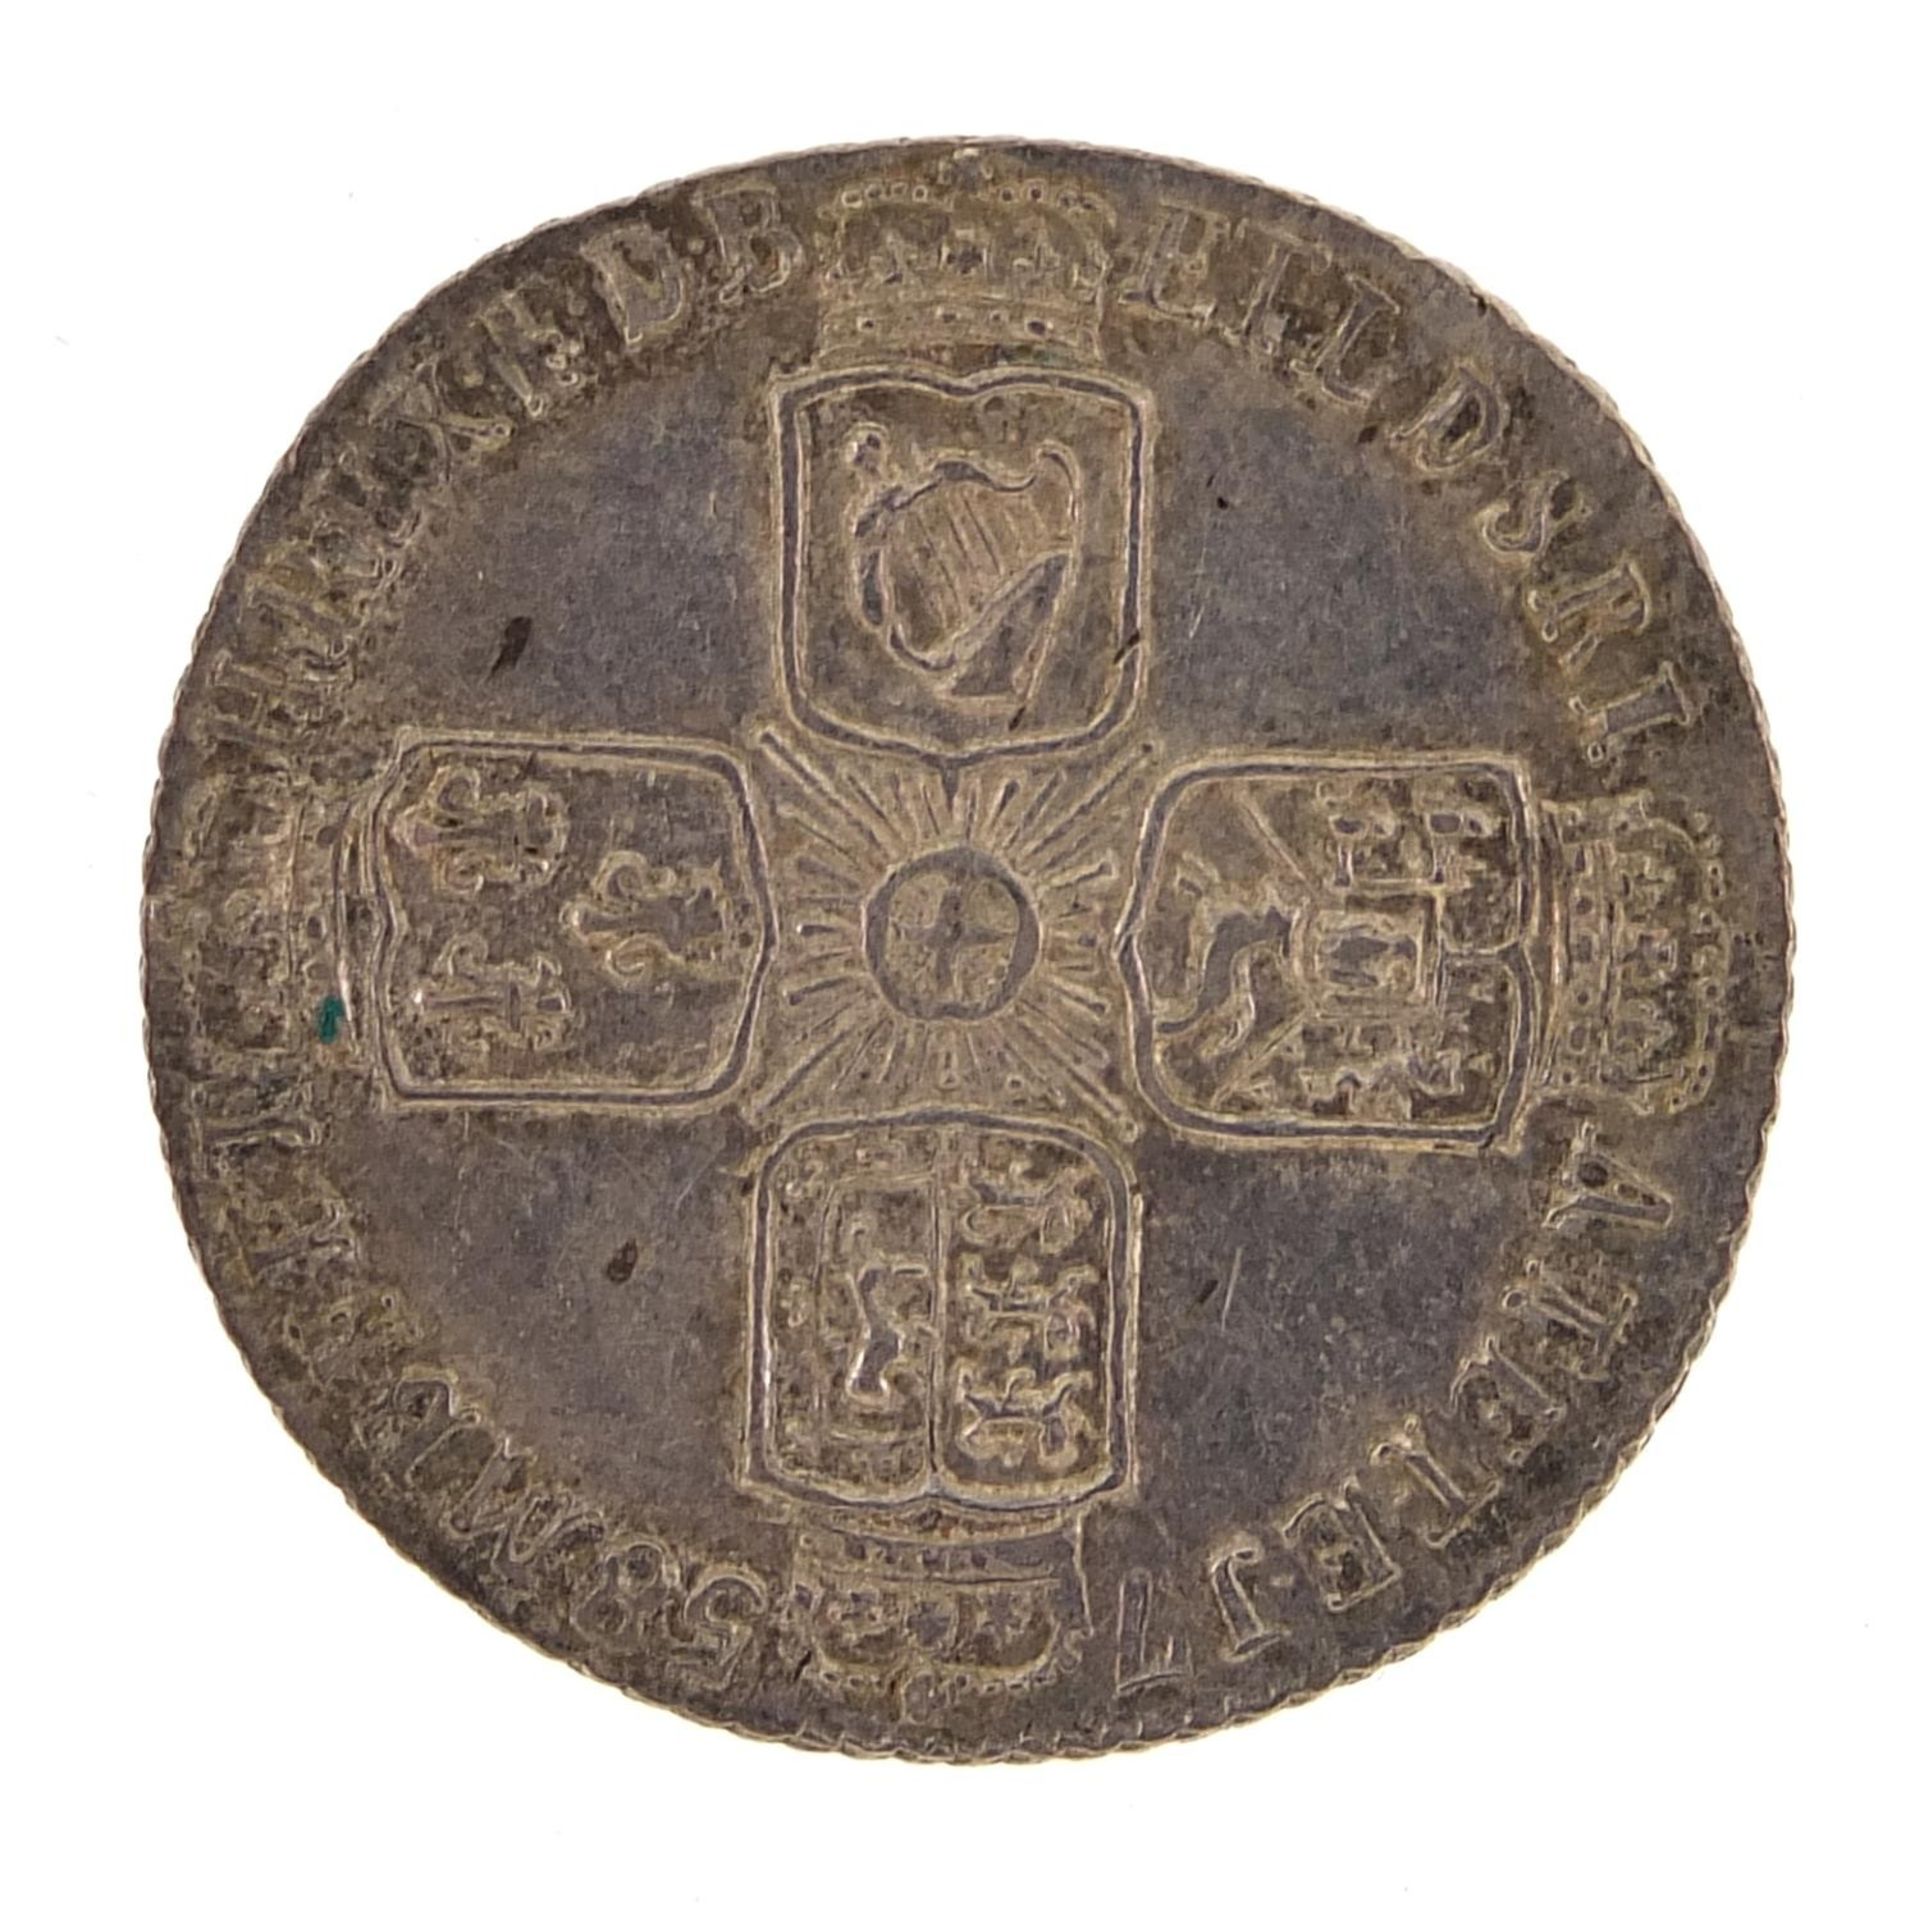 George II 1758 sixpence